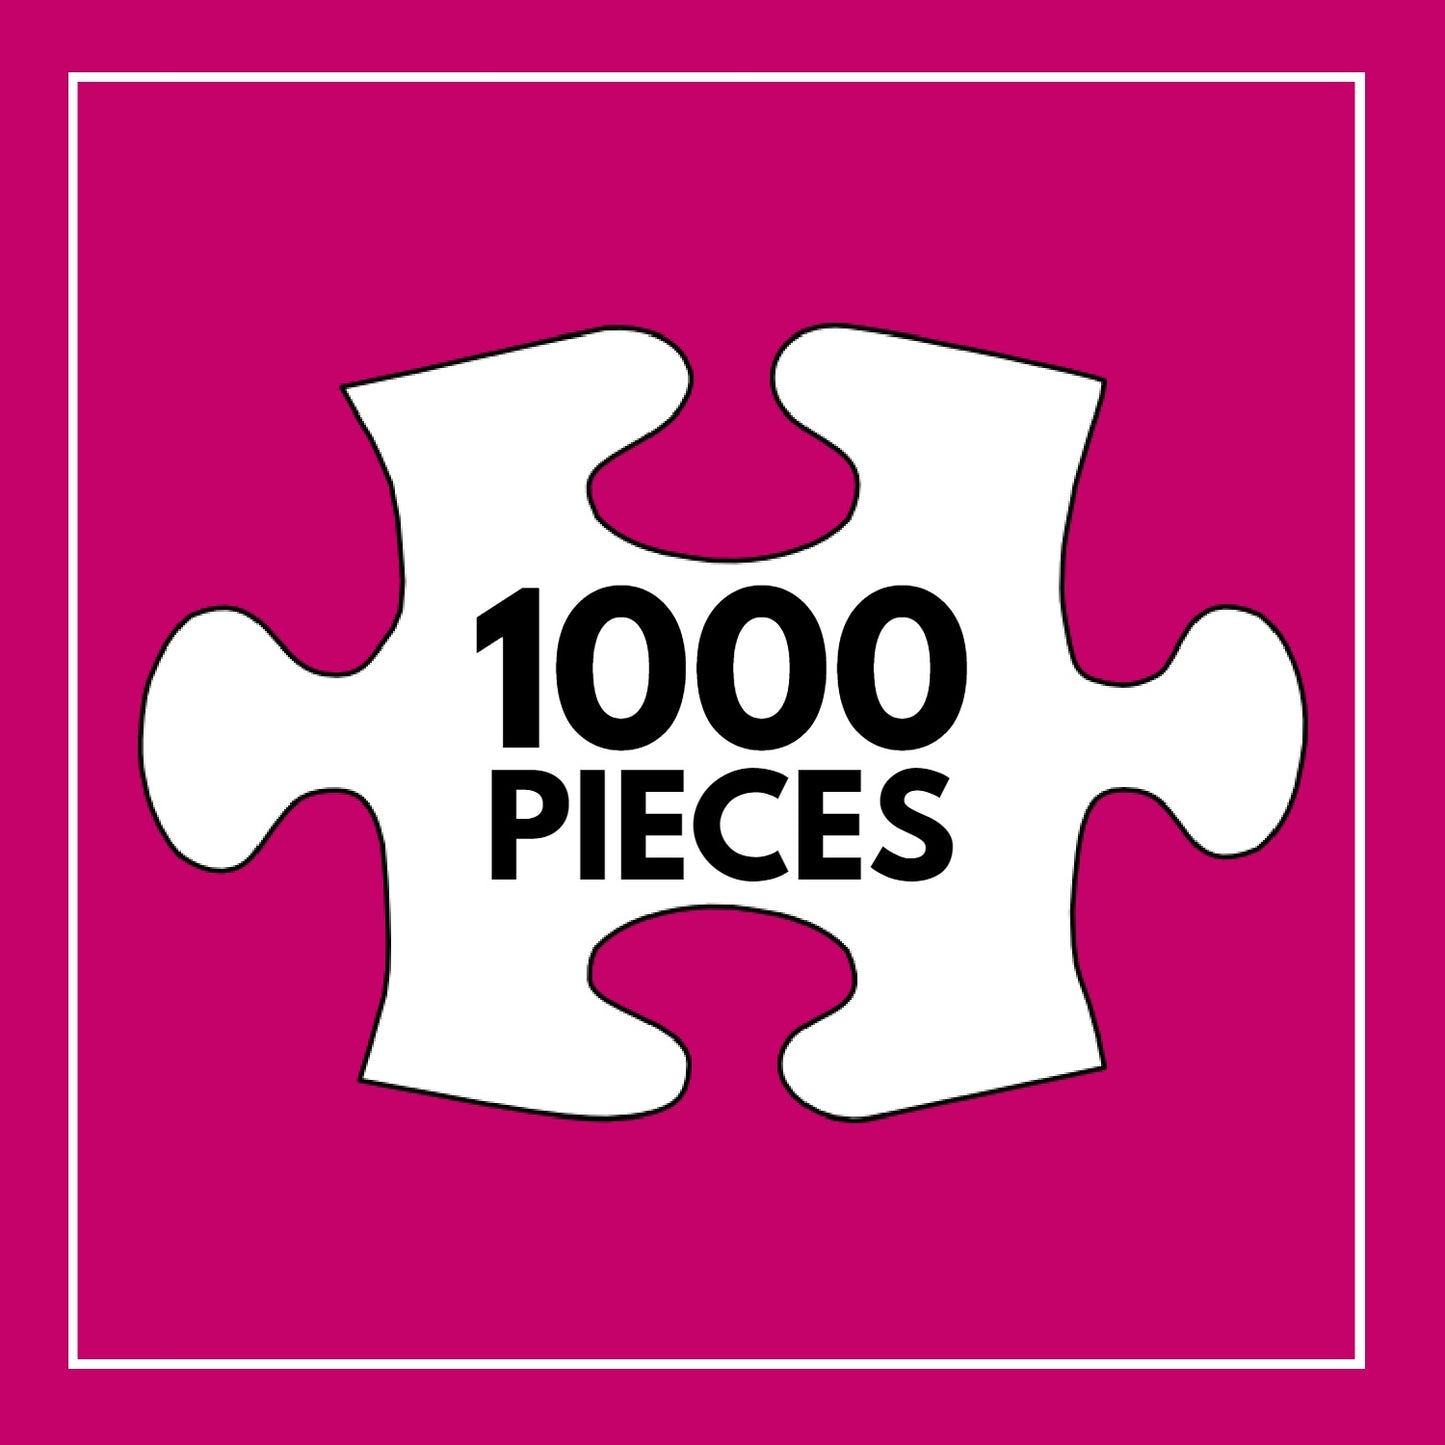 Strike a Pose - 1000 Piece Jigsaw Puzzle | Cross & Glory